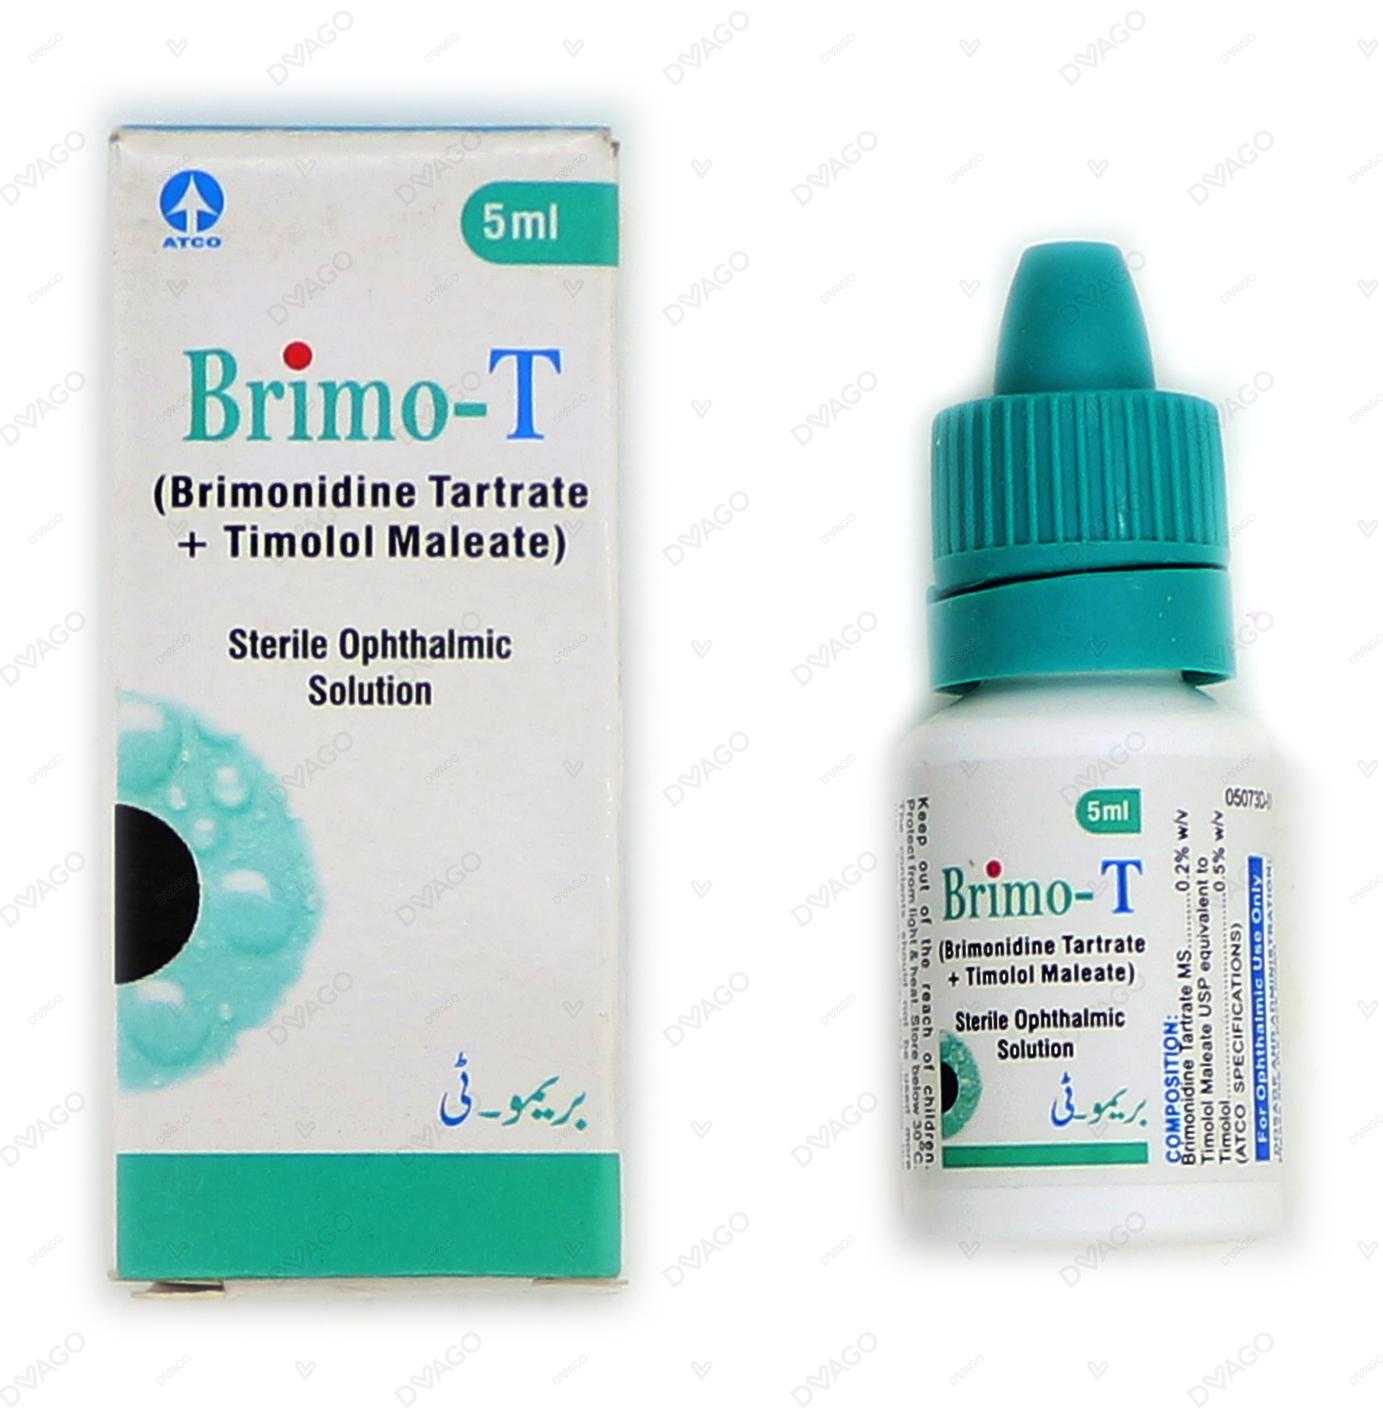 brimo-t eye drops 5ml